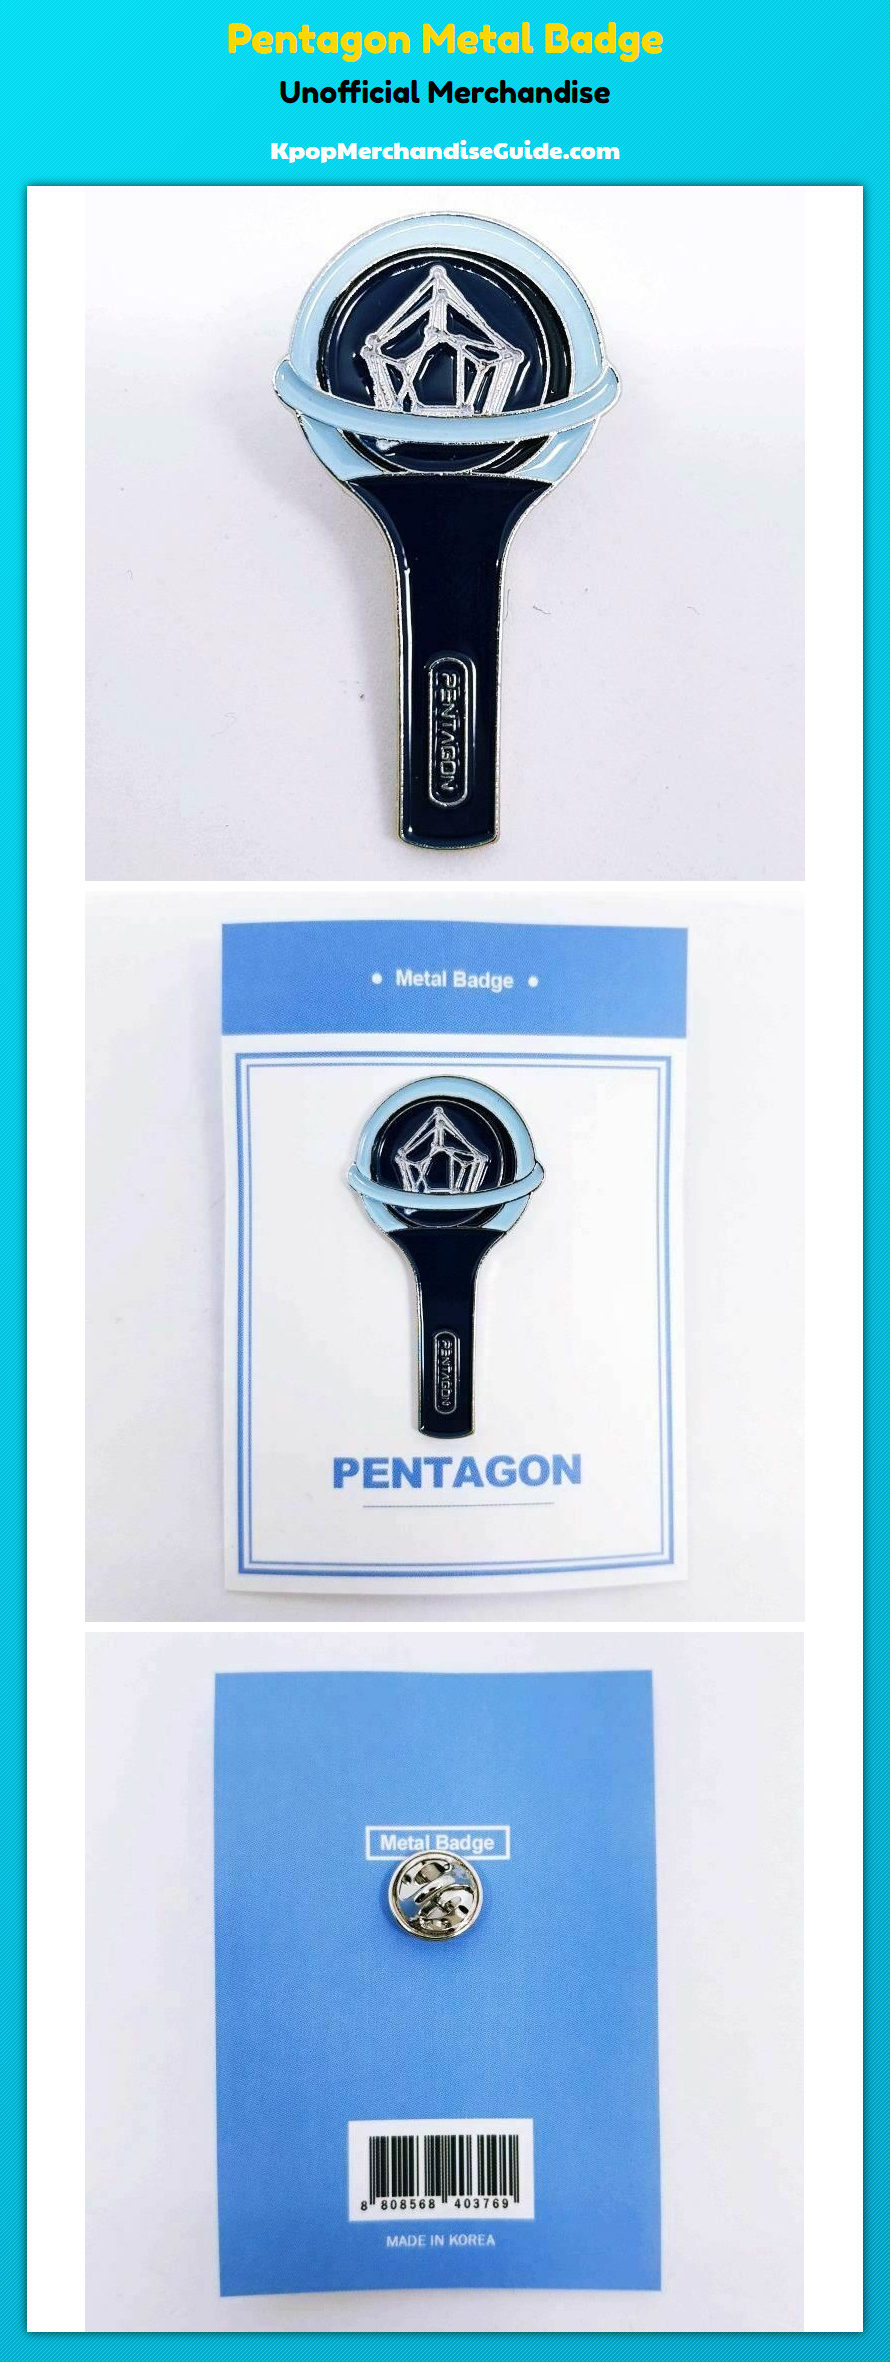 Pentagon Metal Badge